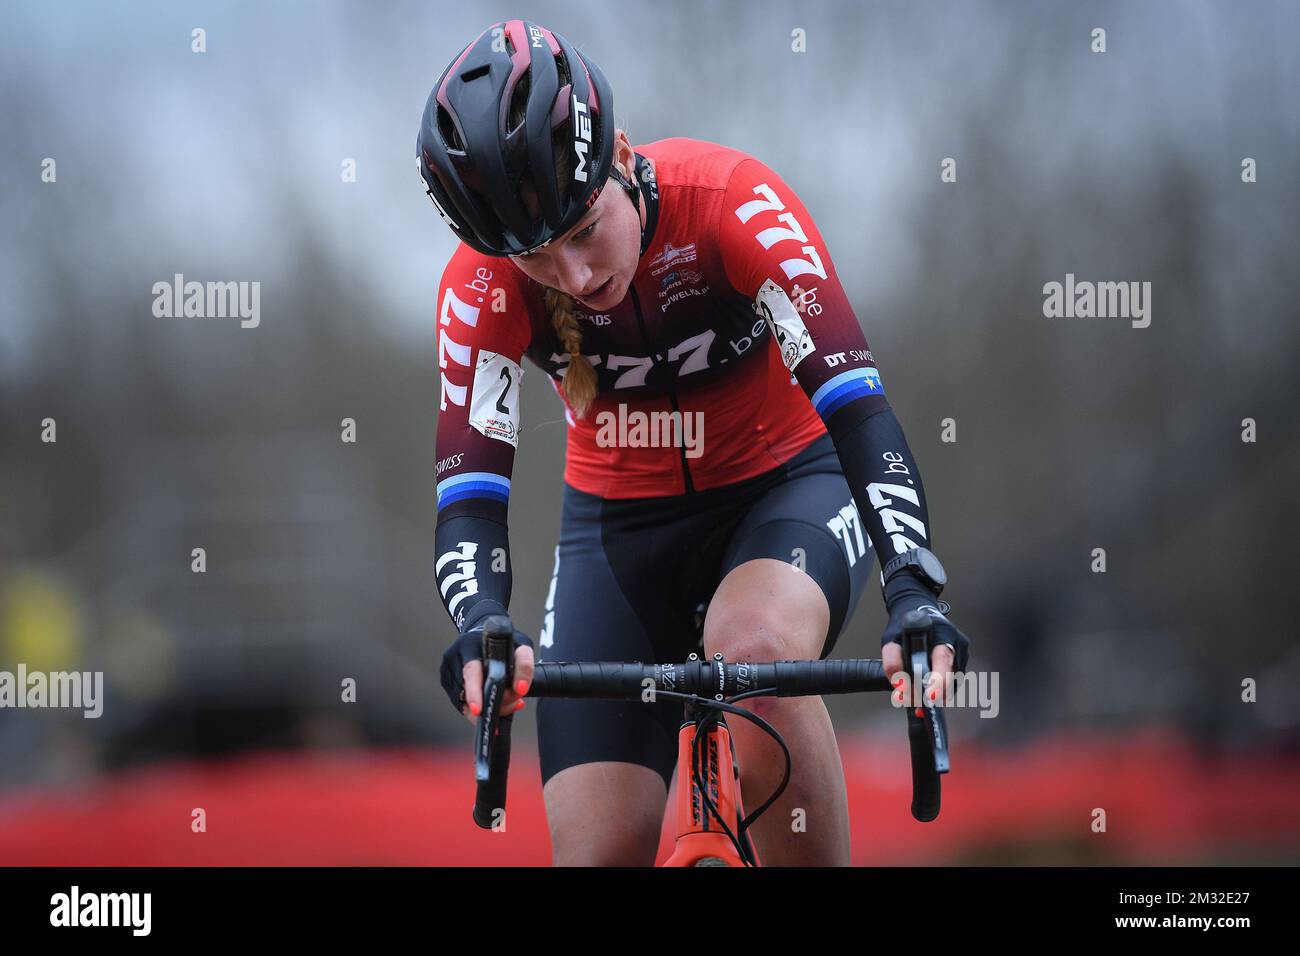 Dutch Annemarie est la pire photo en action lors de la course d'élite féminine au 'Cyclocross Leuven', quatrième étape (hors de la glace) de la compétition de cyclisme 'Rectavit Series', samedi 22 février 2020 à Heverlee, Louvain. BELGA PHOTO DAVID STOCKMAN Banque D'Images